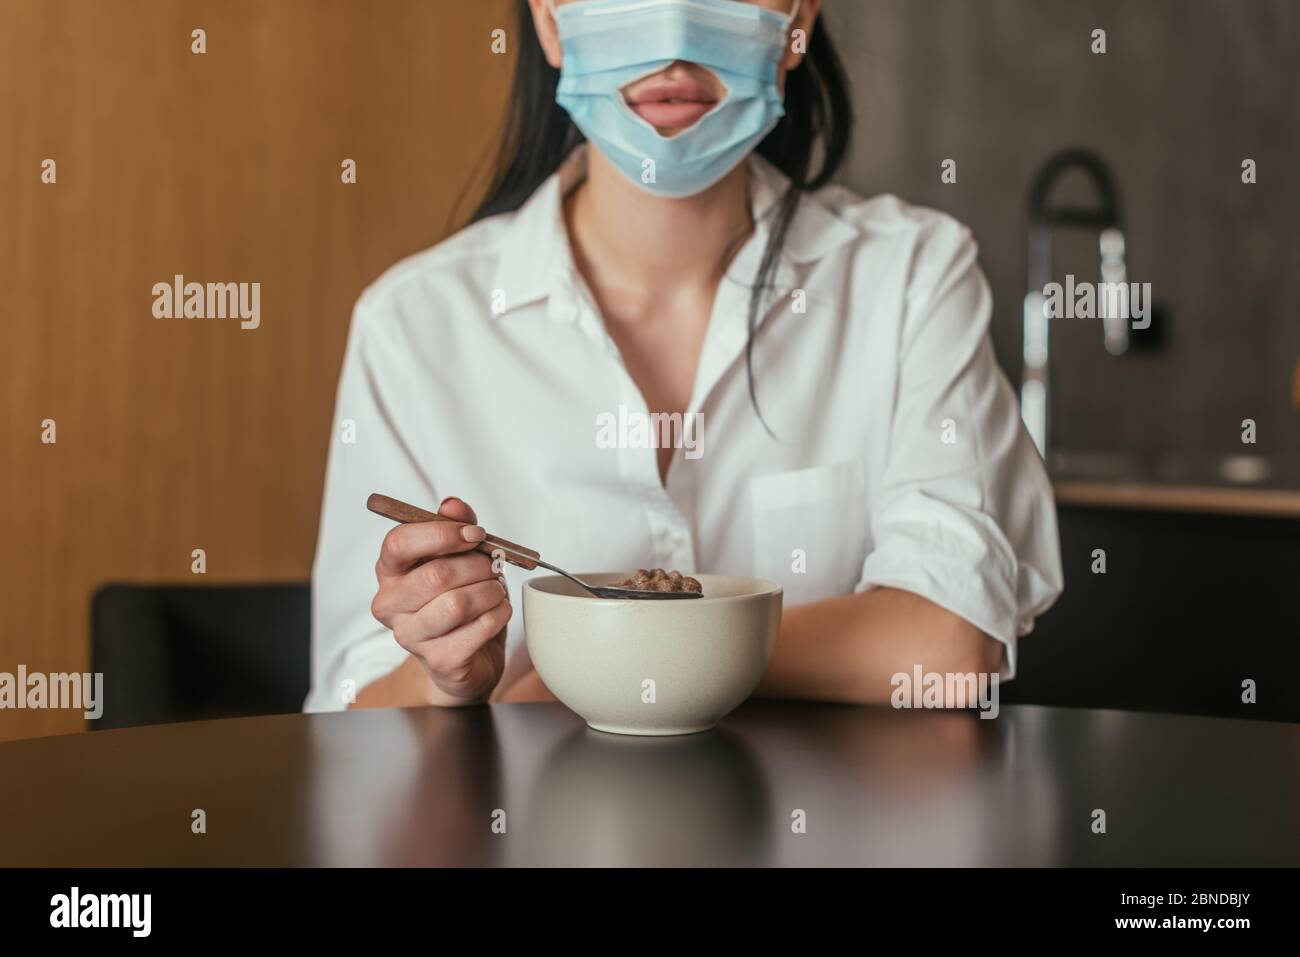 vista-tagliata-della-donna-in-maschera-medica-con-foro-per-bocca-che-tiene-il-cucchiaio-vicino-ciotola-con-la-colazione-2bndbjy.jpg